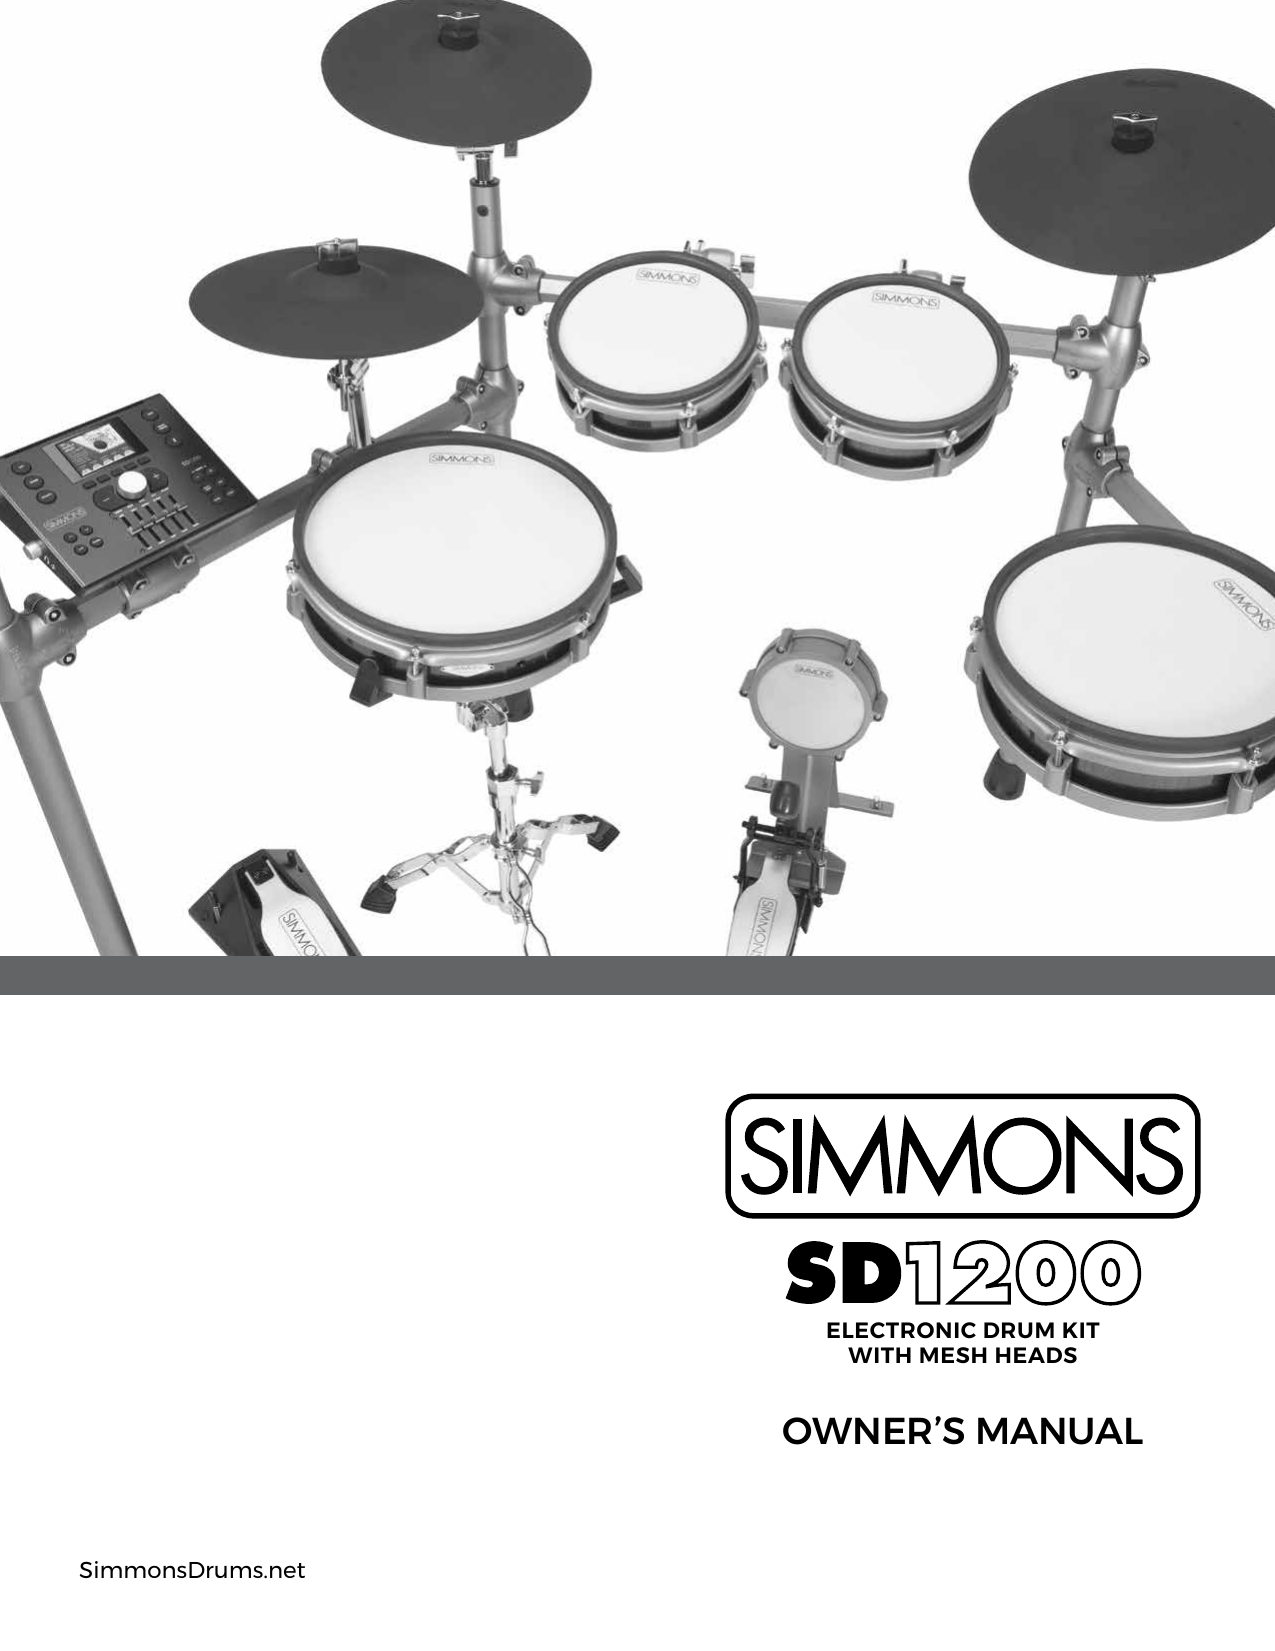 tm 808 drum kit